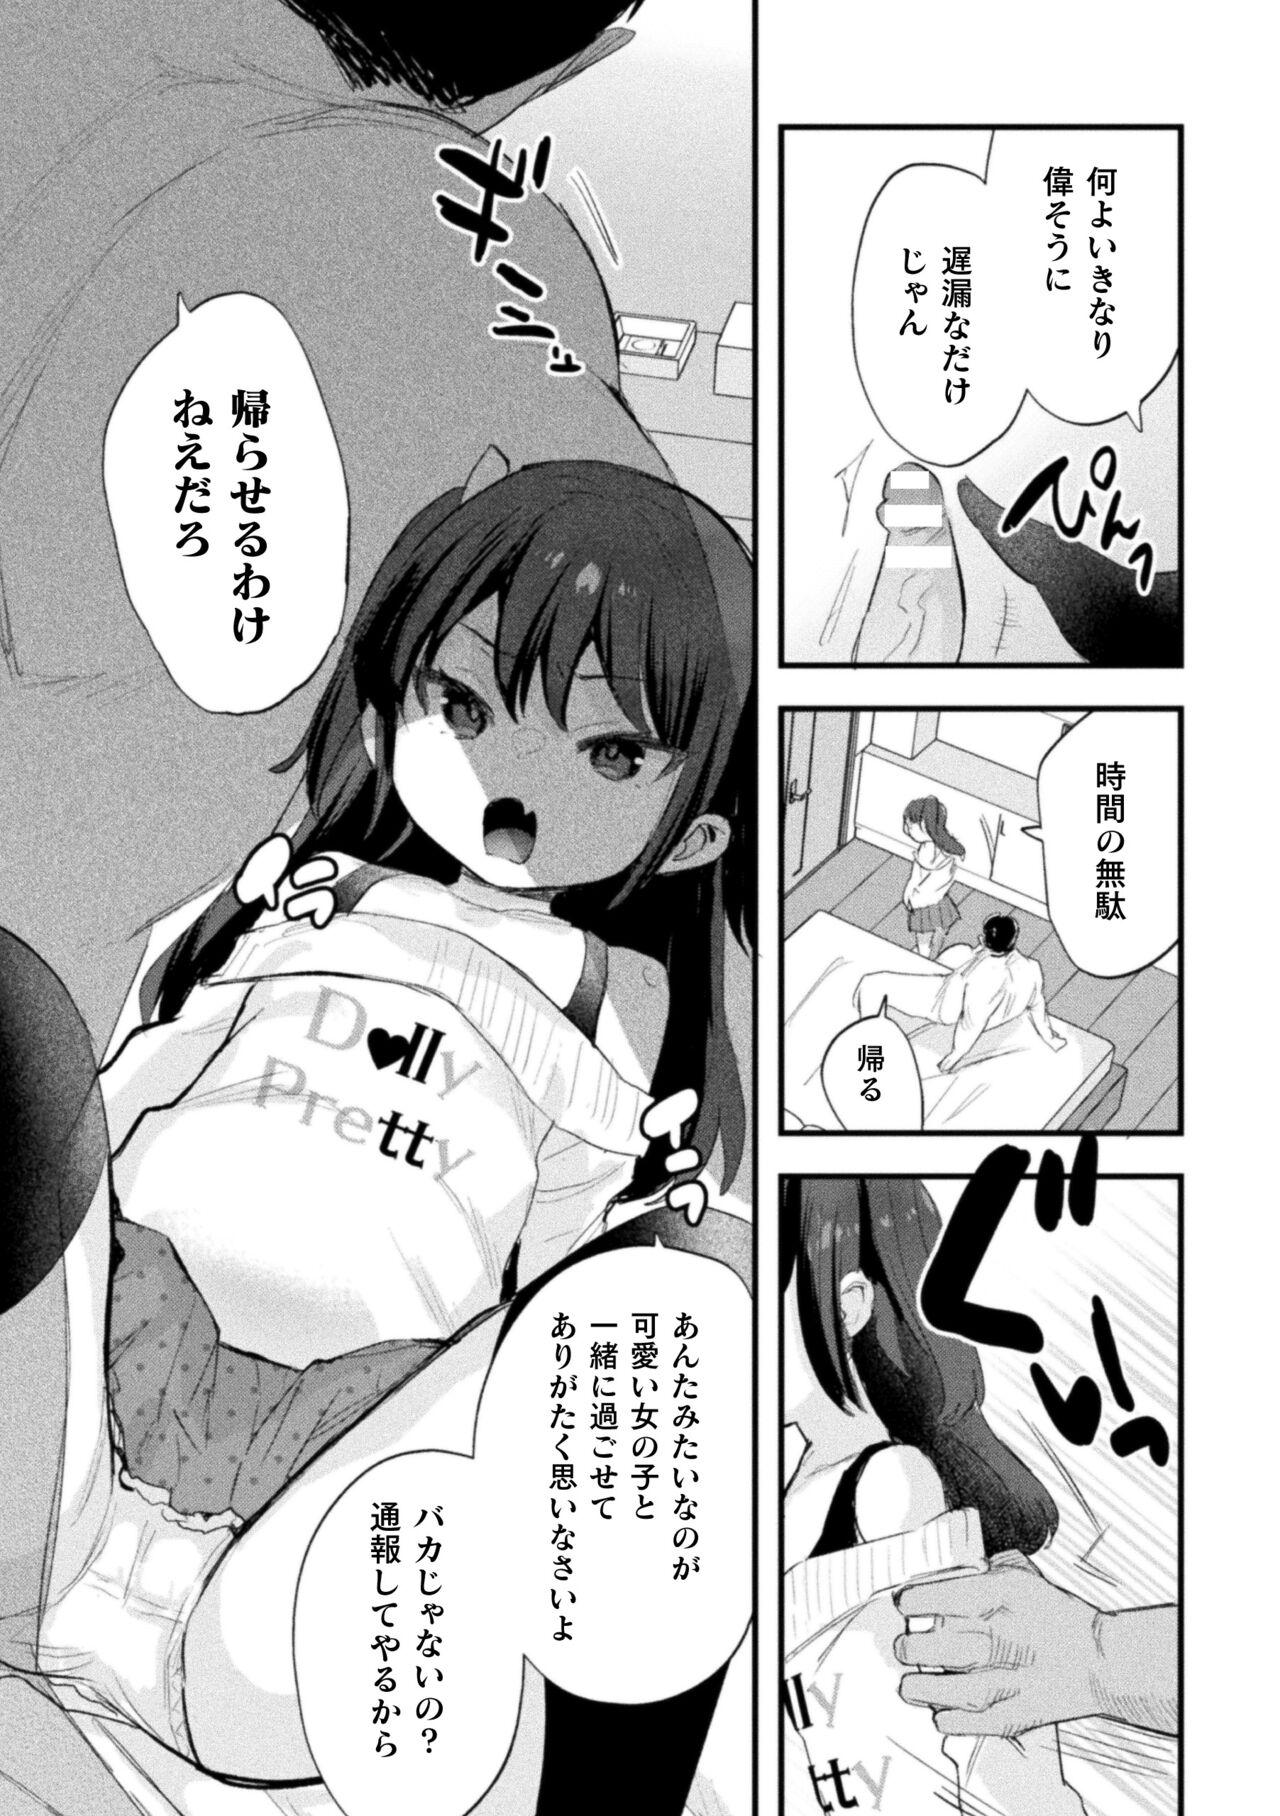 Girls Nijigen komikku magajin mesugakipapa katsu seisai o teate wa niku bō ikkatsu wakara se harai Vol. 1 Bunduda - Page 9